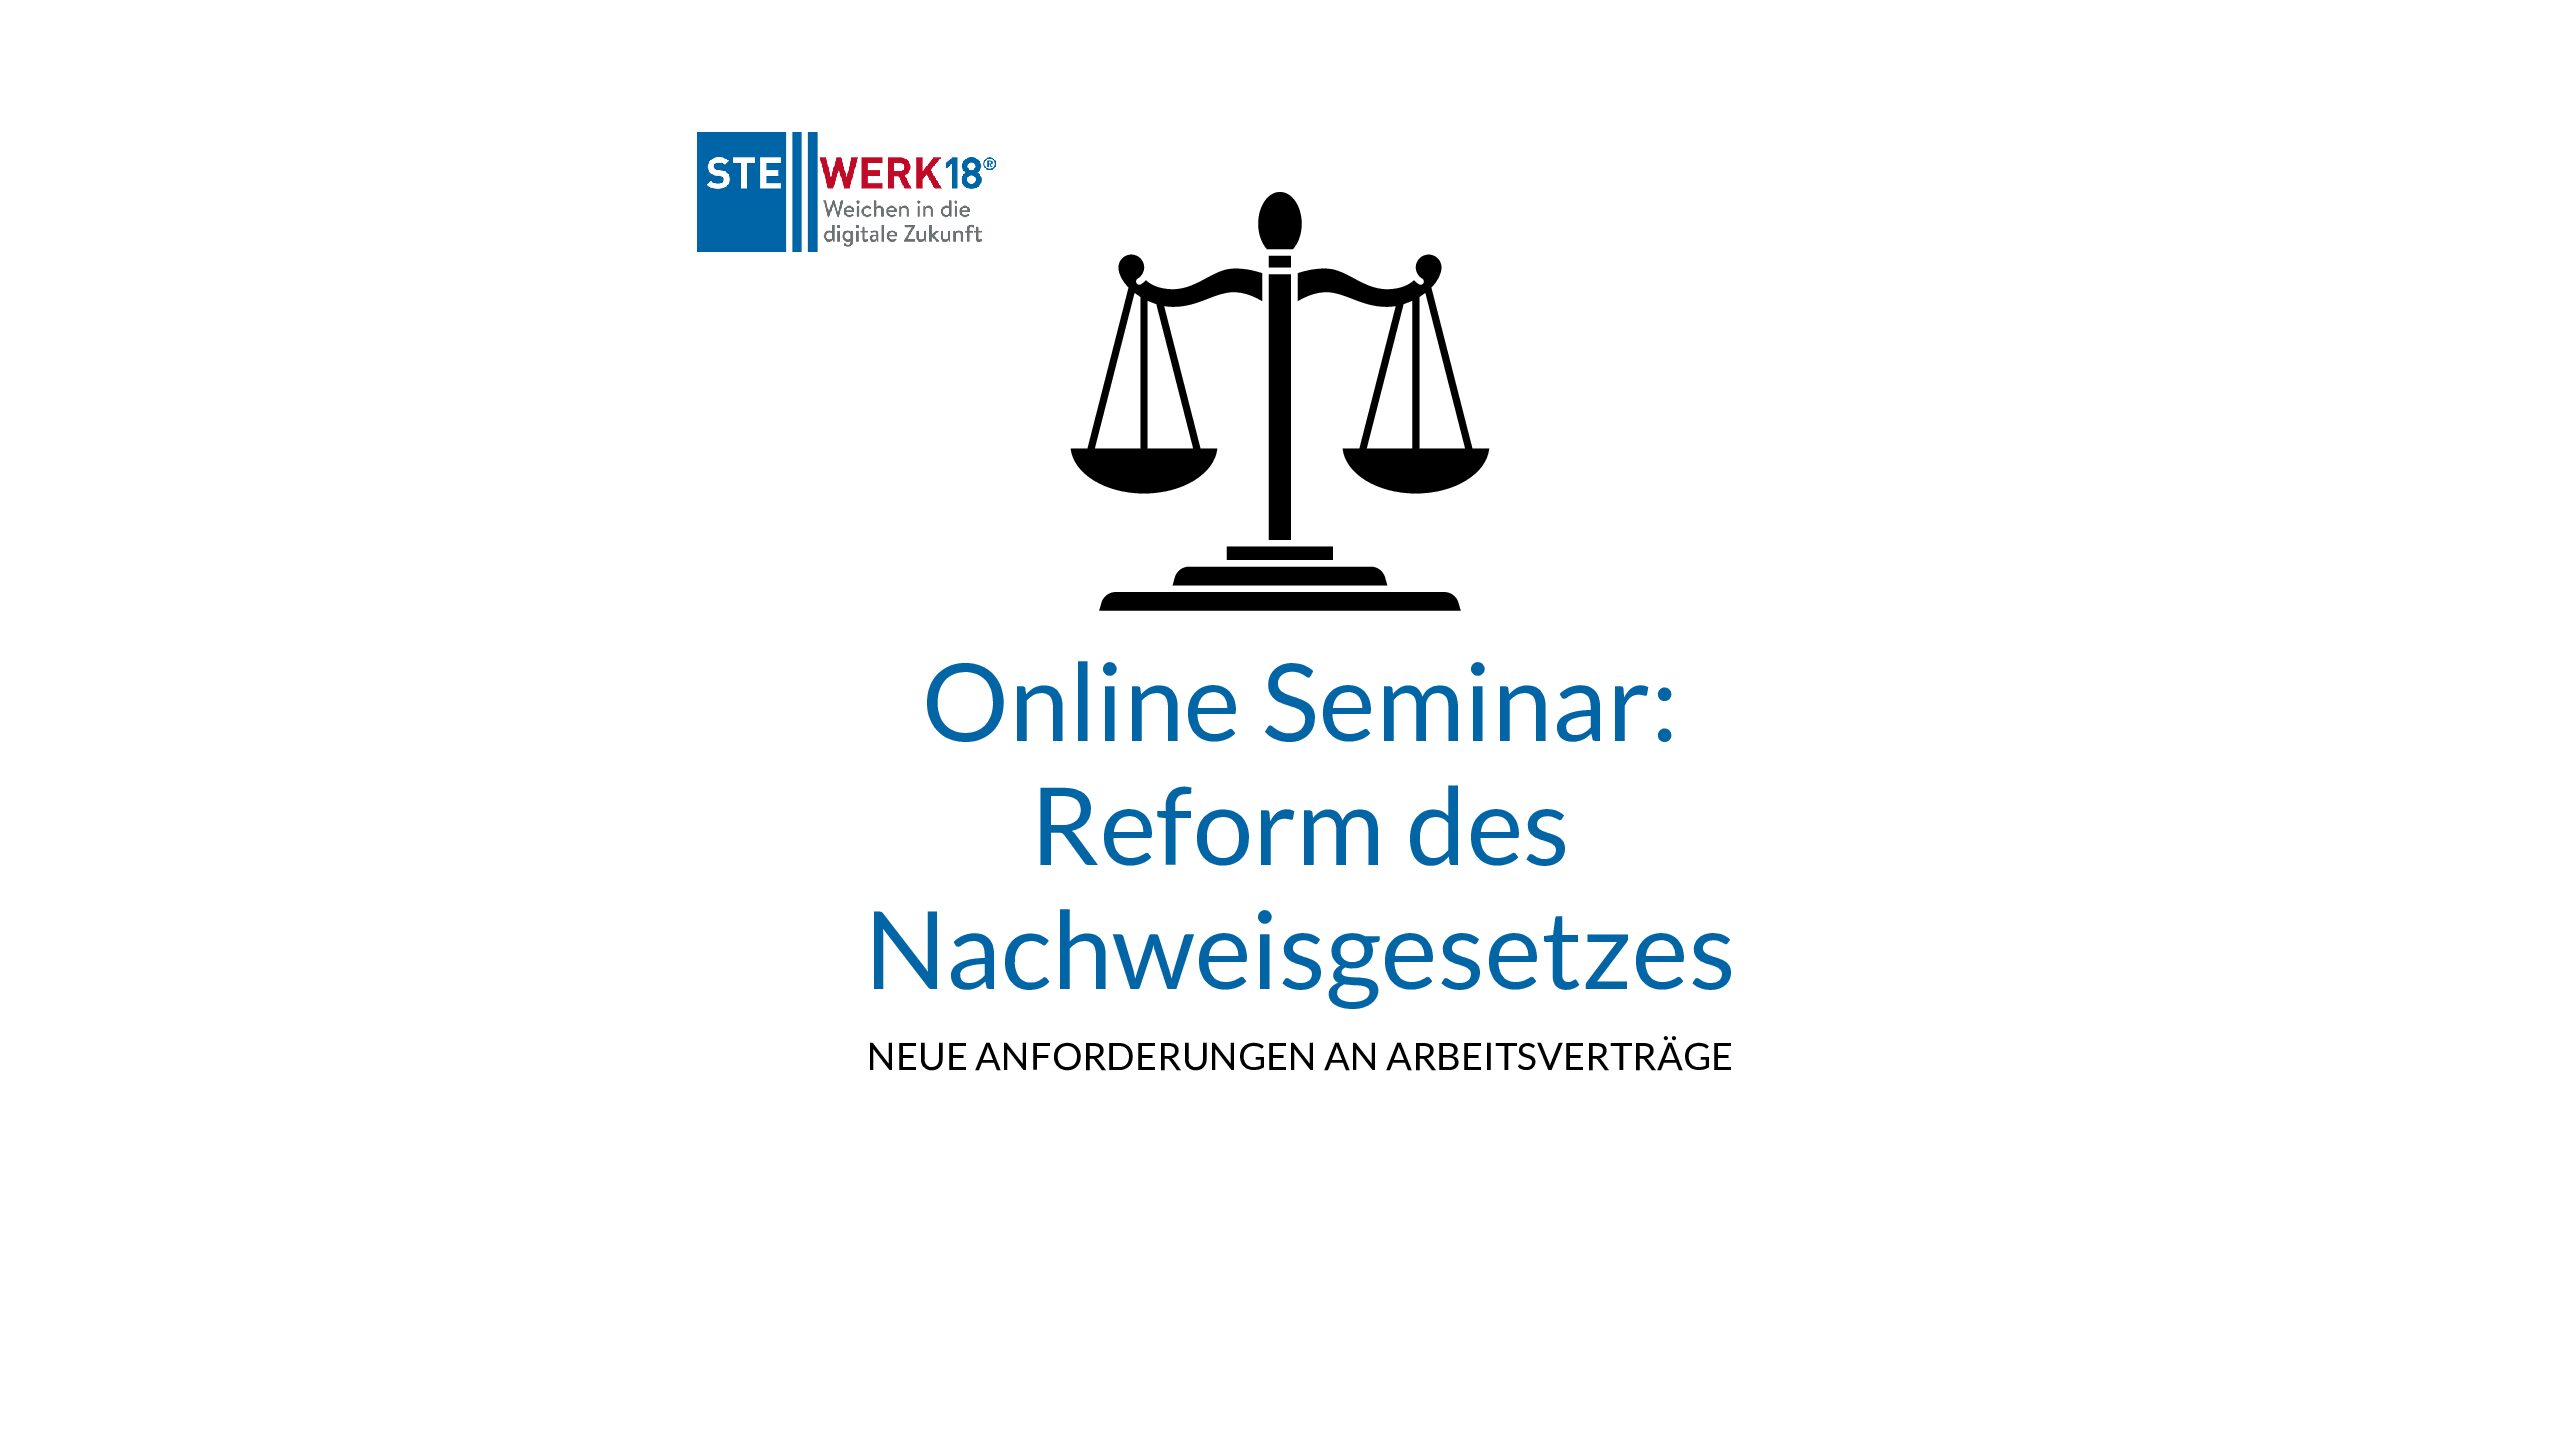 Online Seminar NachweisG pdf - Online-Seminar: Reform des Nachweisgesetzes – neue Anforderungen an Arbeitsverträge